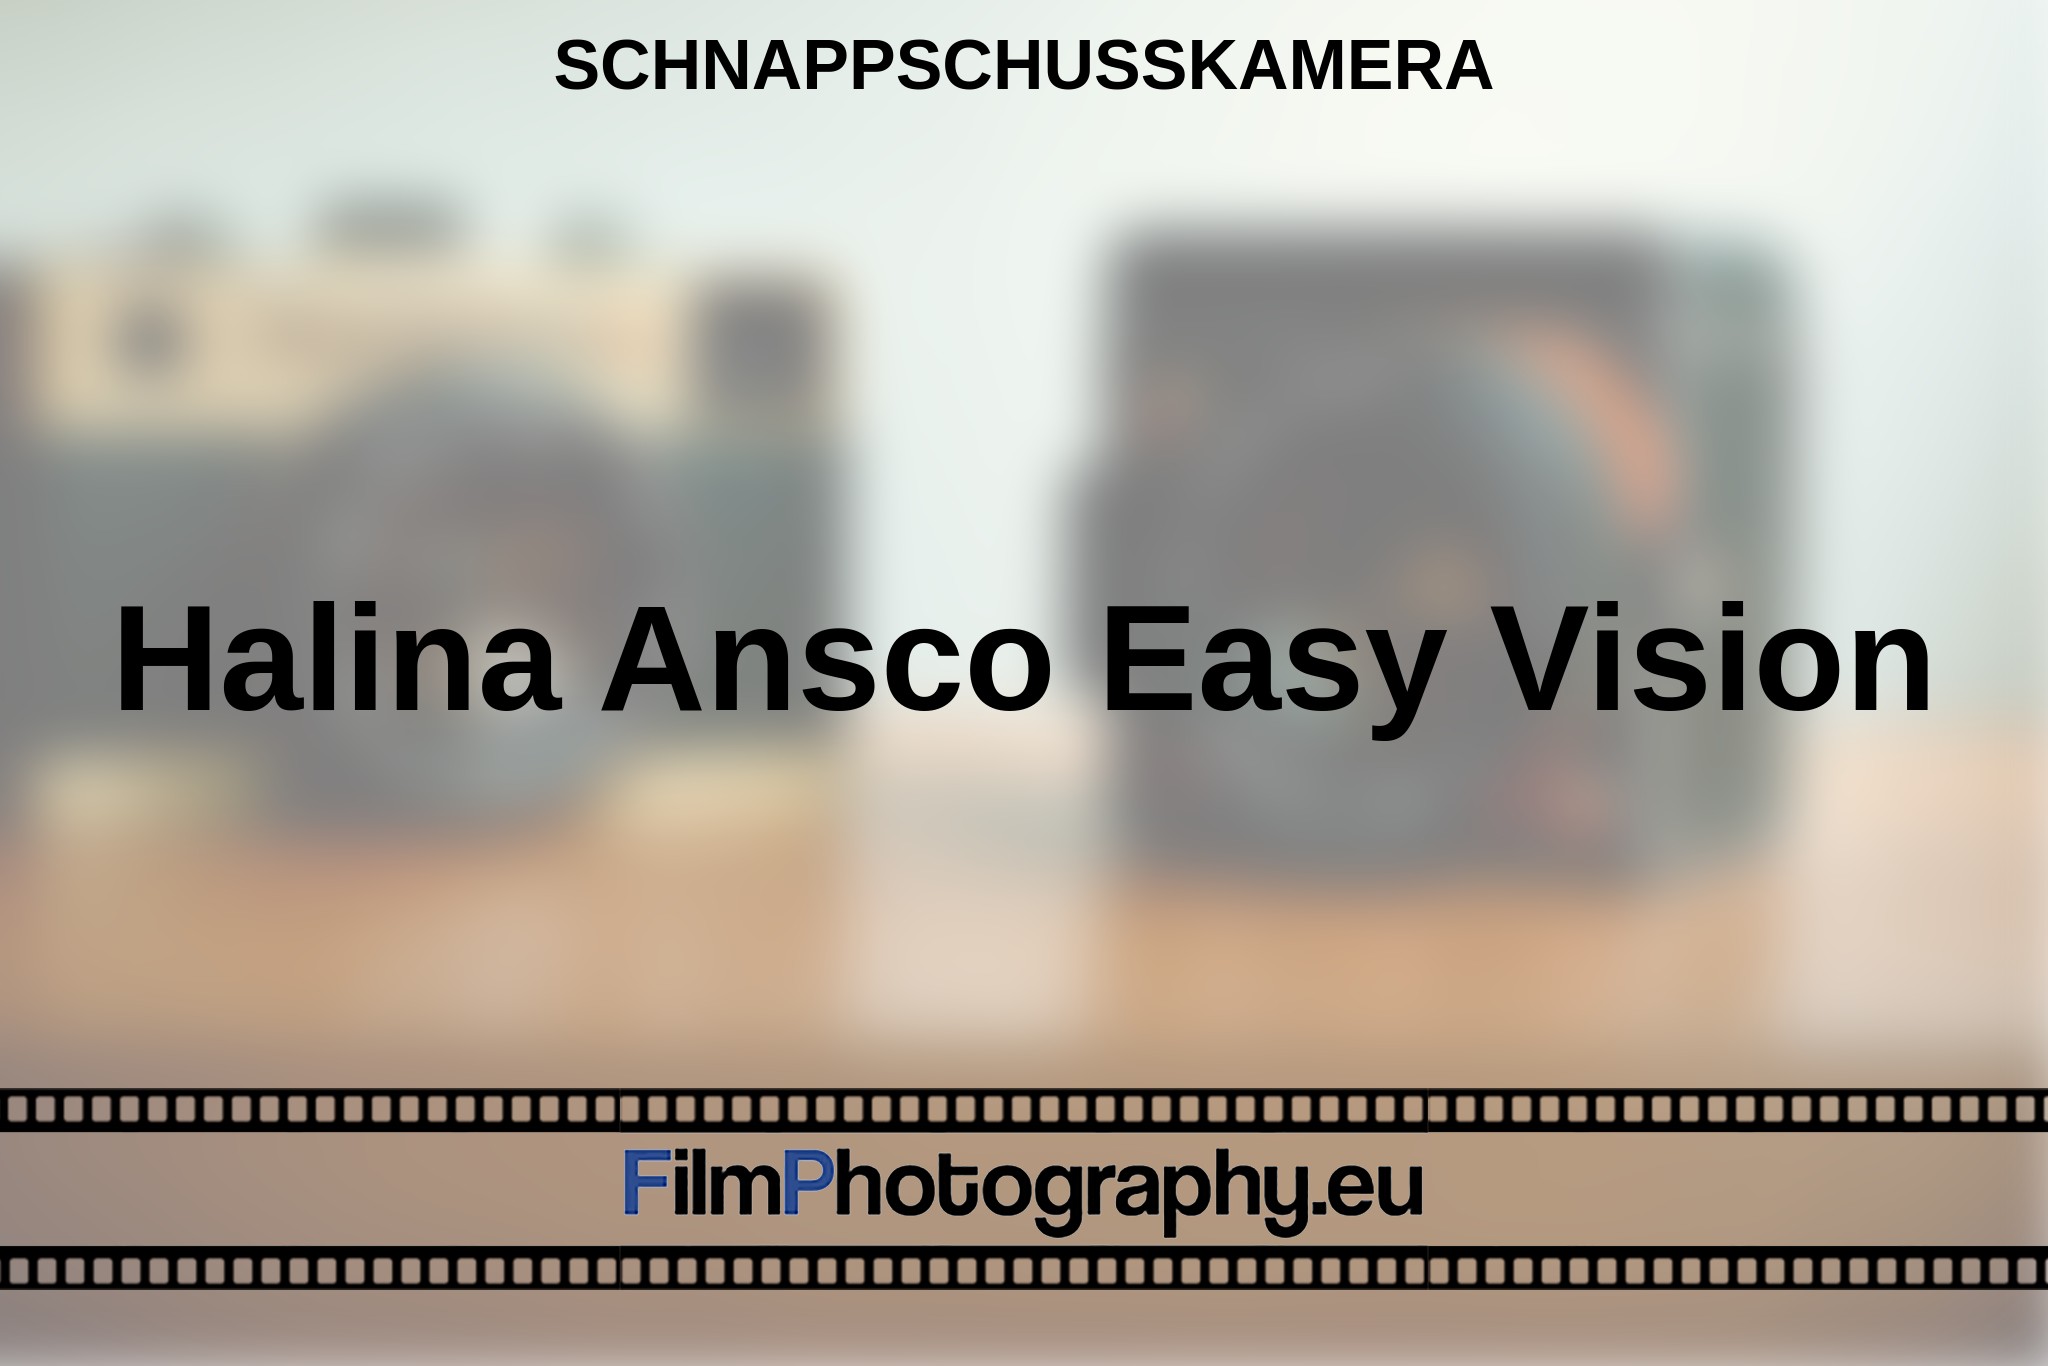 halina-ansco-easy-vision-schnappschusskamera-bnv.jpg